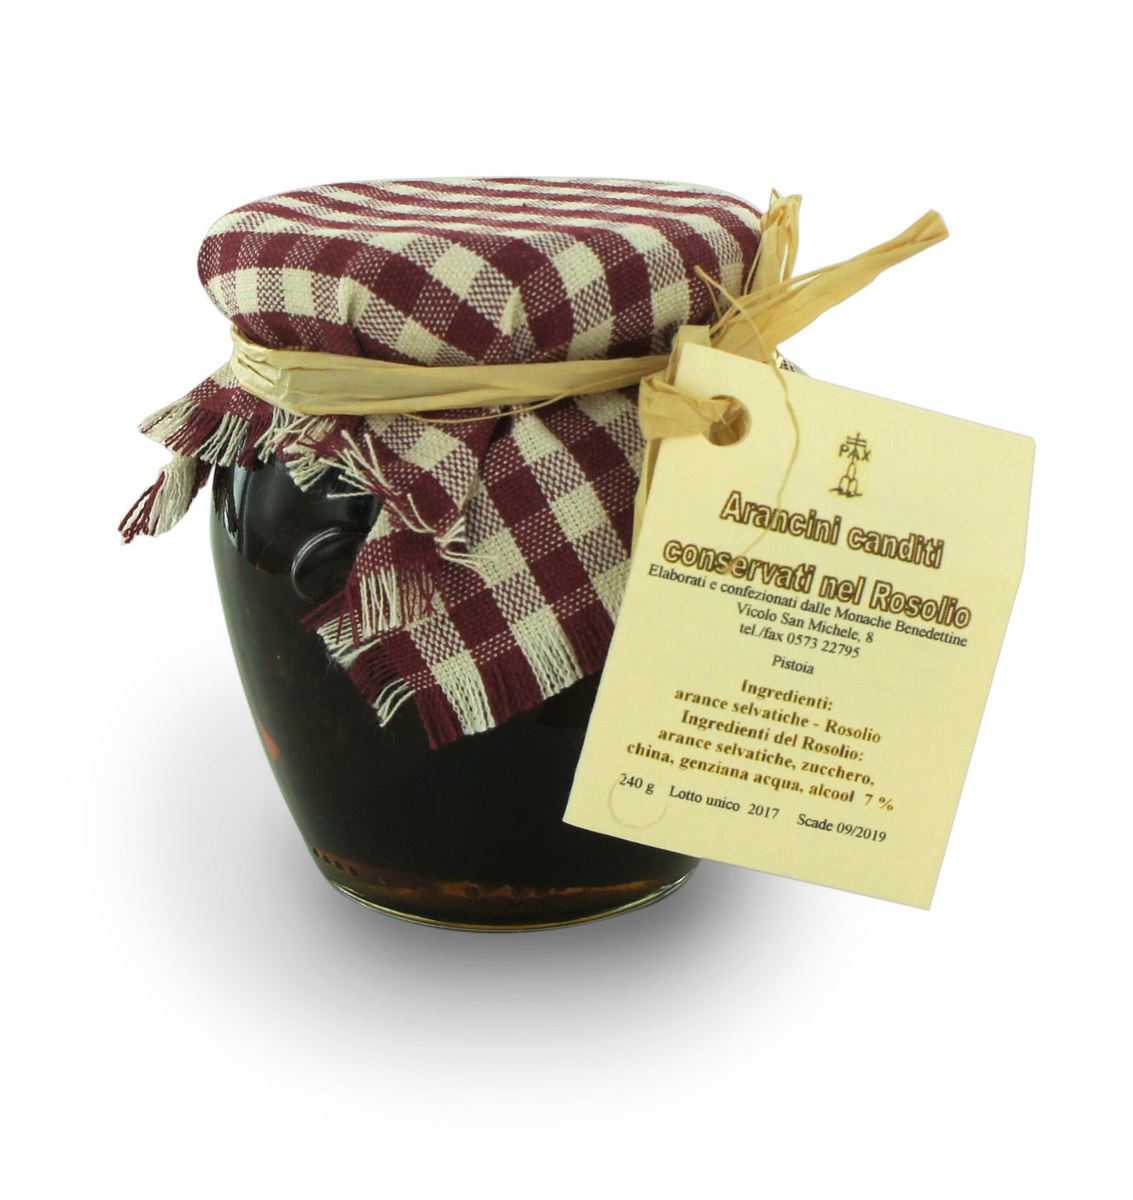 arancini canditi conservati nel rosolio-vasetto gr.240 della spezieria delle monache benedettine di pistoia